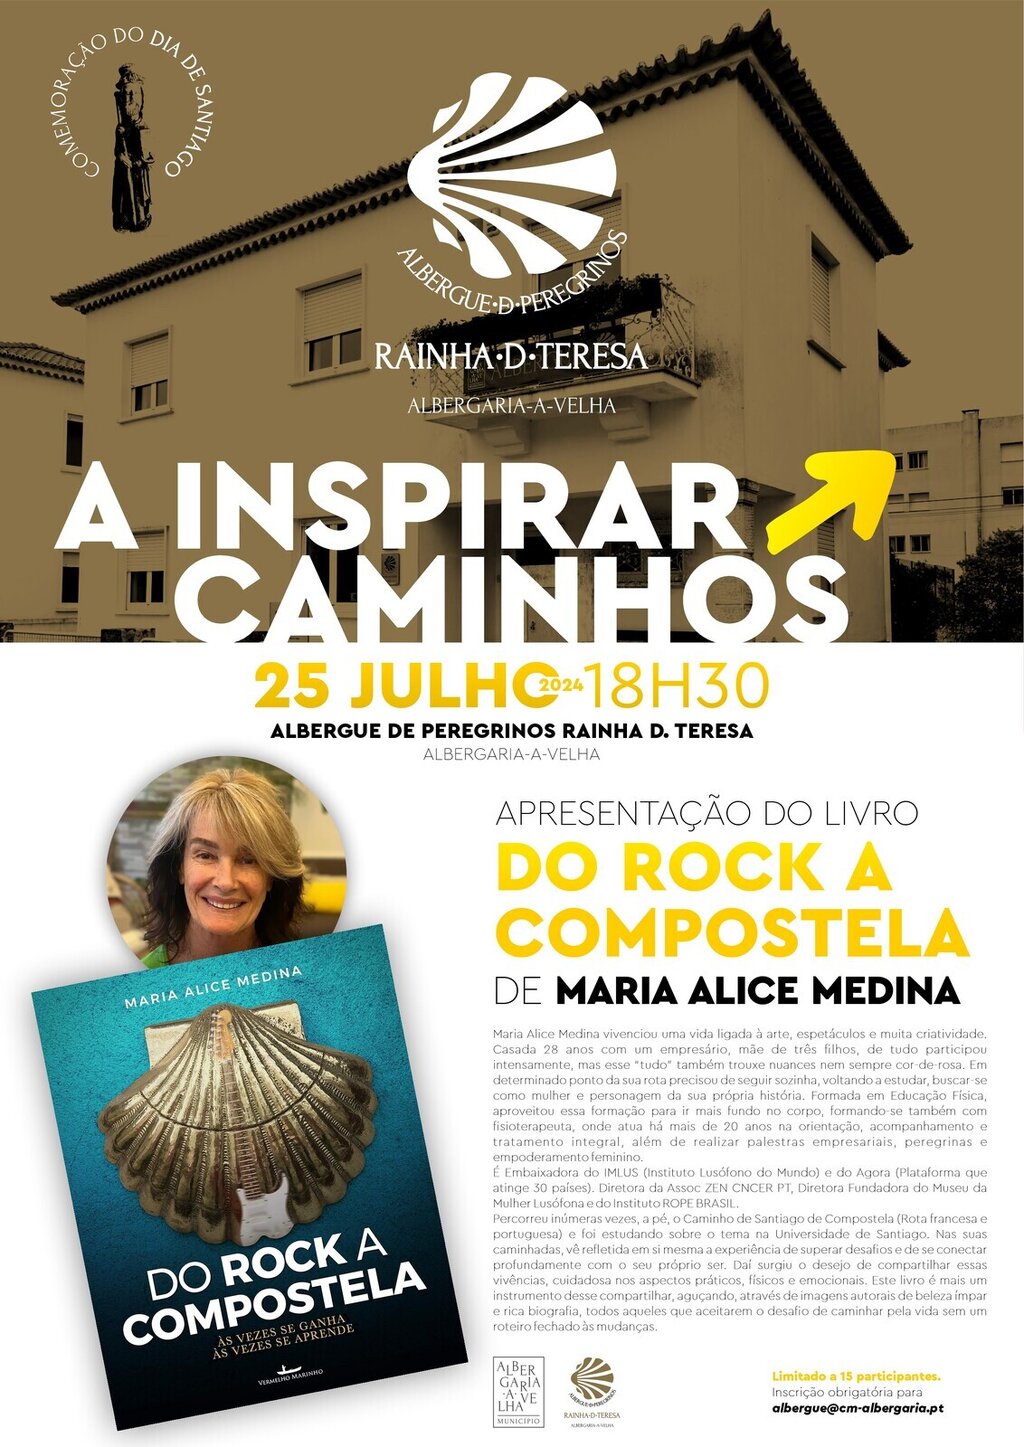 A INSPIRAR CAMINHOS - Do Rock a Compostela de Maria Alice Medina